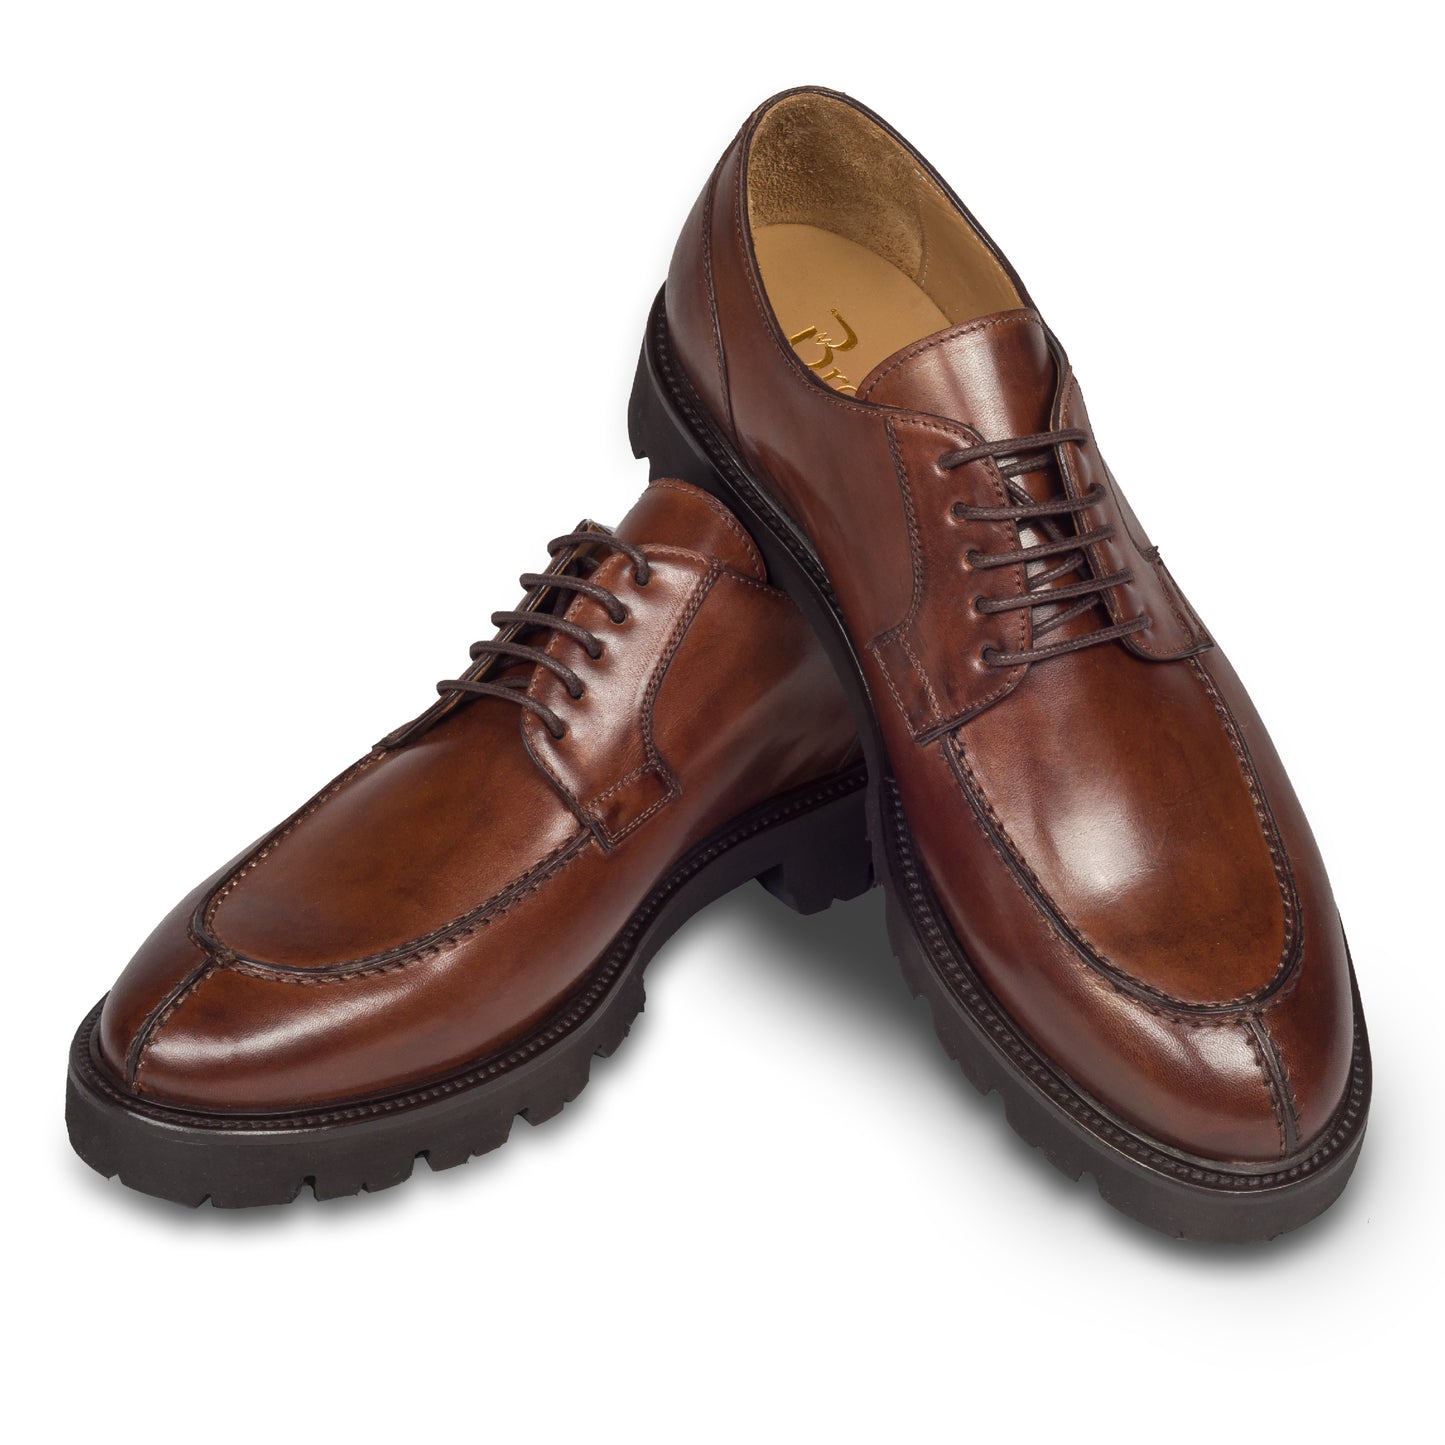 BRECOS – Italienischer Herren Schnür-Halbschuh in kastanien braun, aus Kalbsleder mit ultraleichter Gummiprofilsohle. Handgefertigt und durchgenäht. Schuhe paarweise überkreuzt aufgestellt.